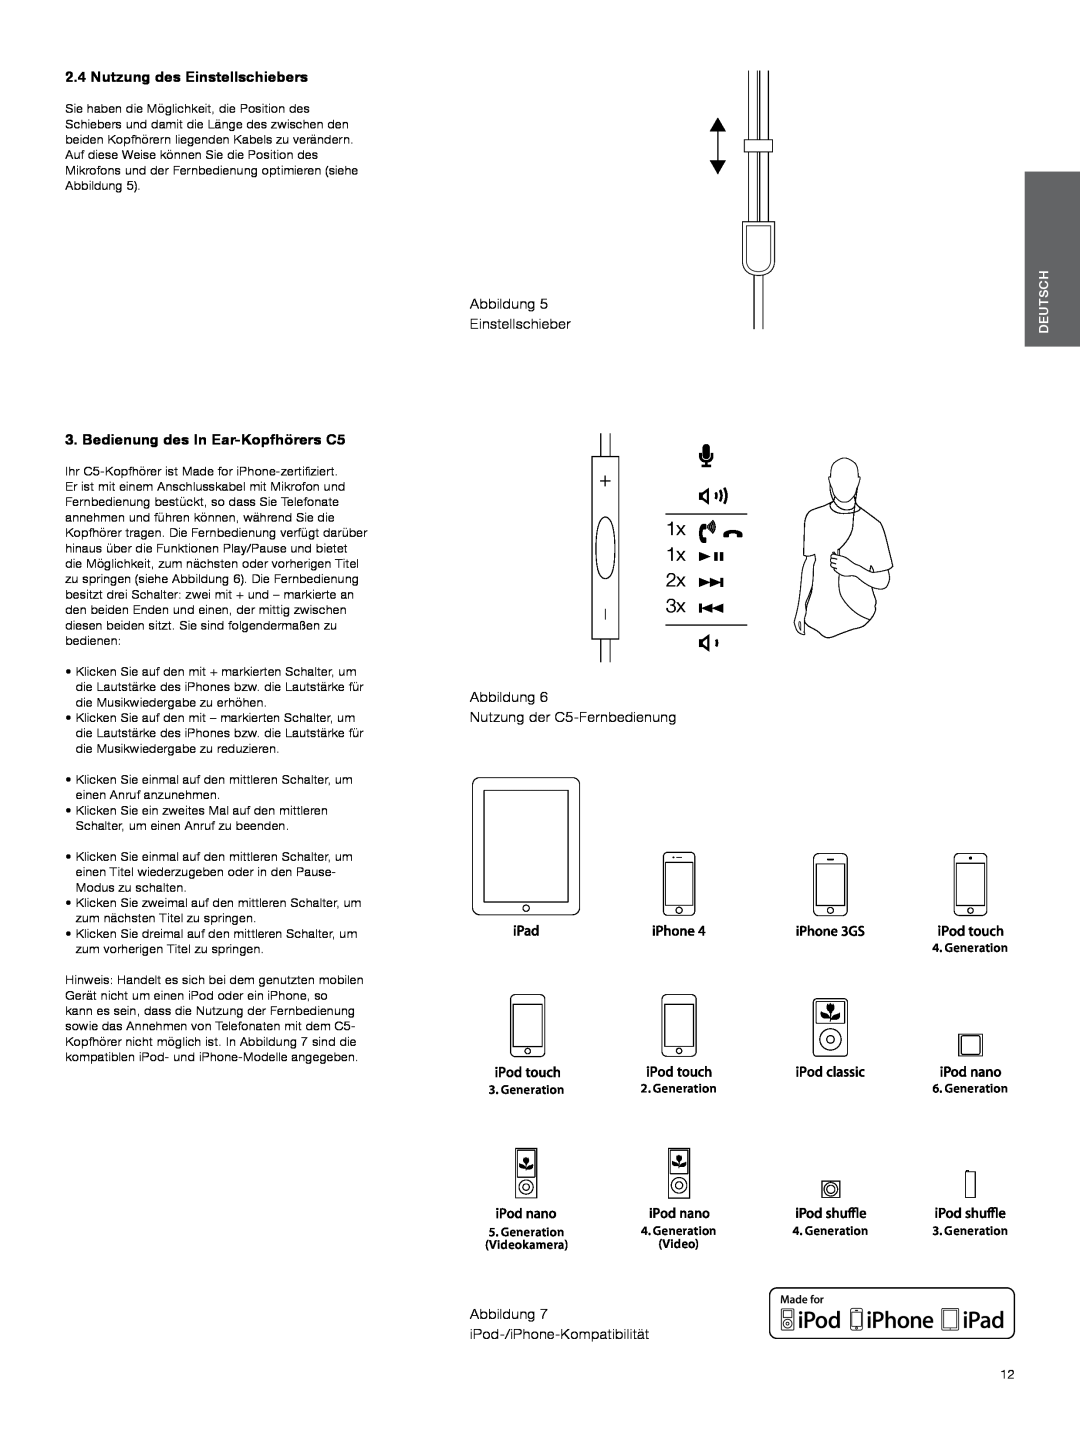 Bowers & Wilkins 1x, Nutzung des Einstellschiebers, Bedienung des In Ear-KopfhörersC5, Abbildung, Deutsch, Generation 